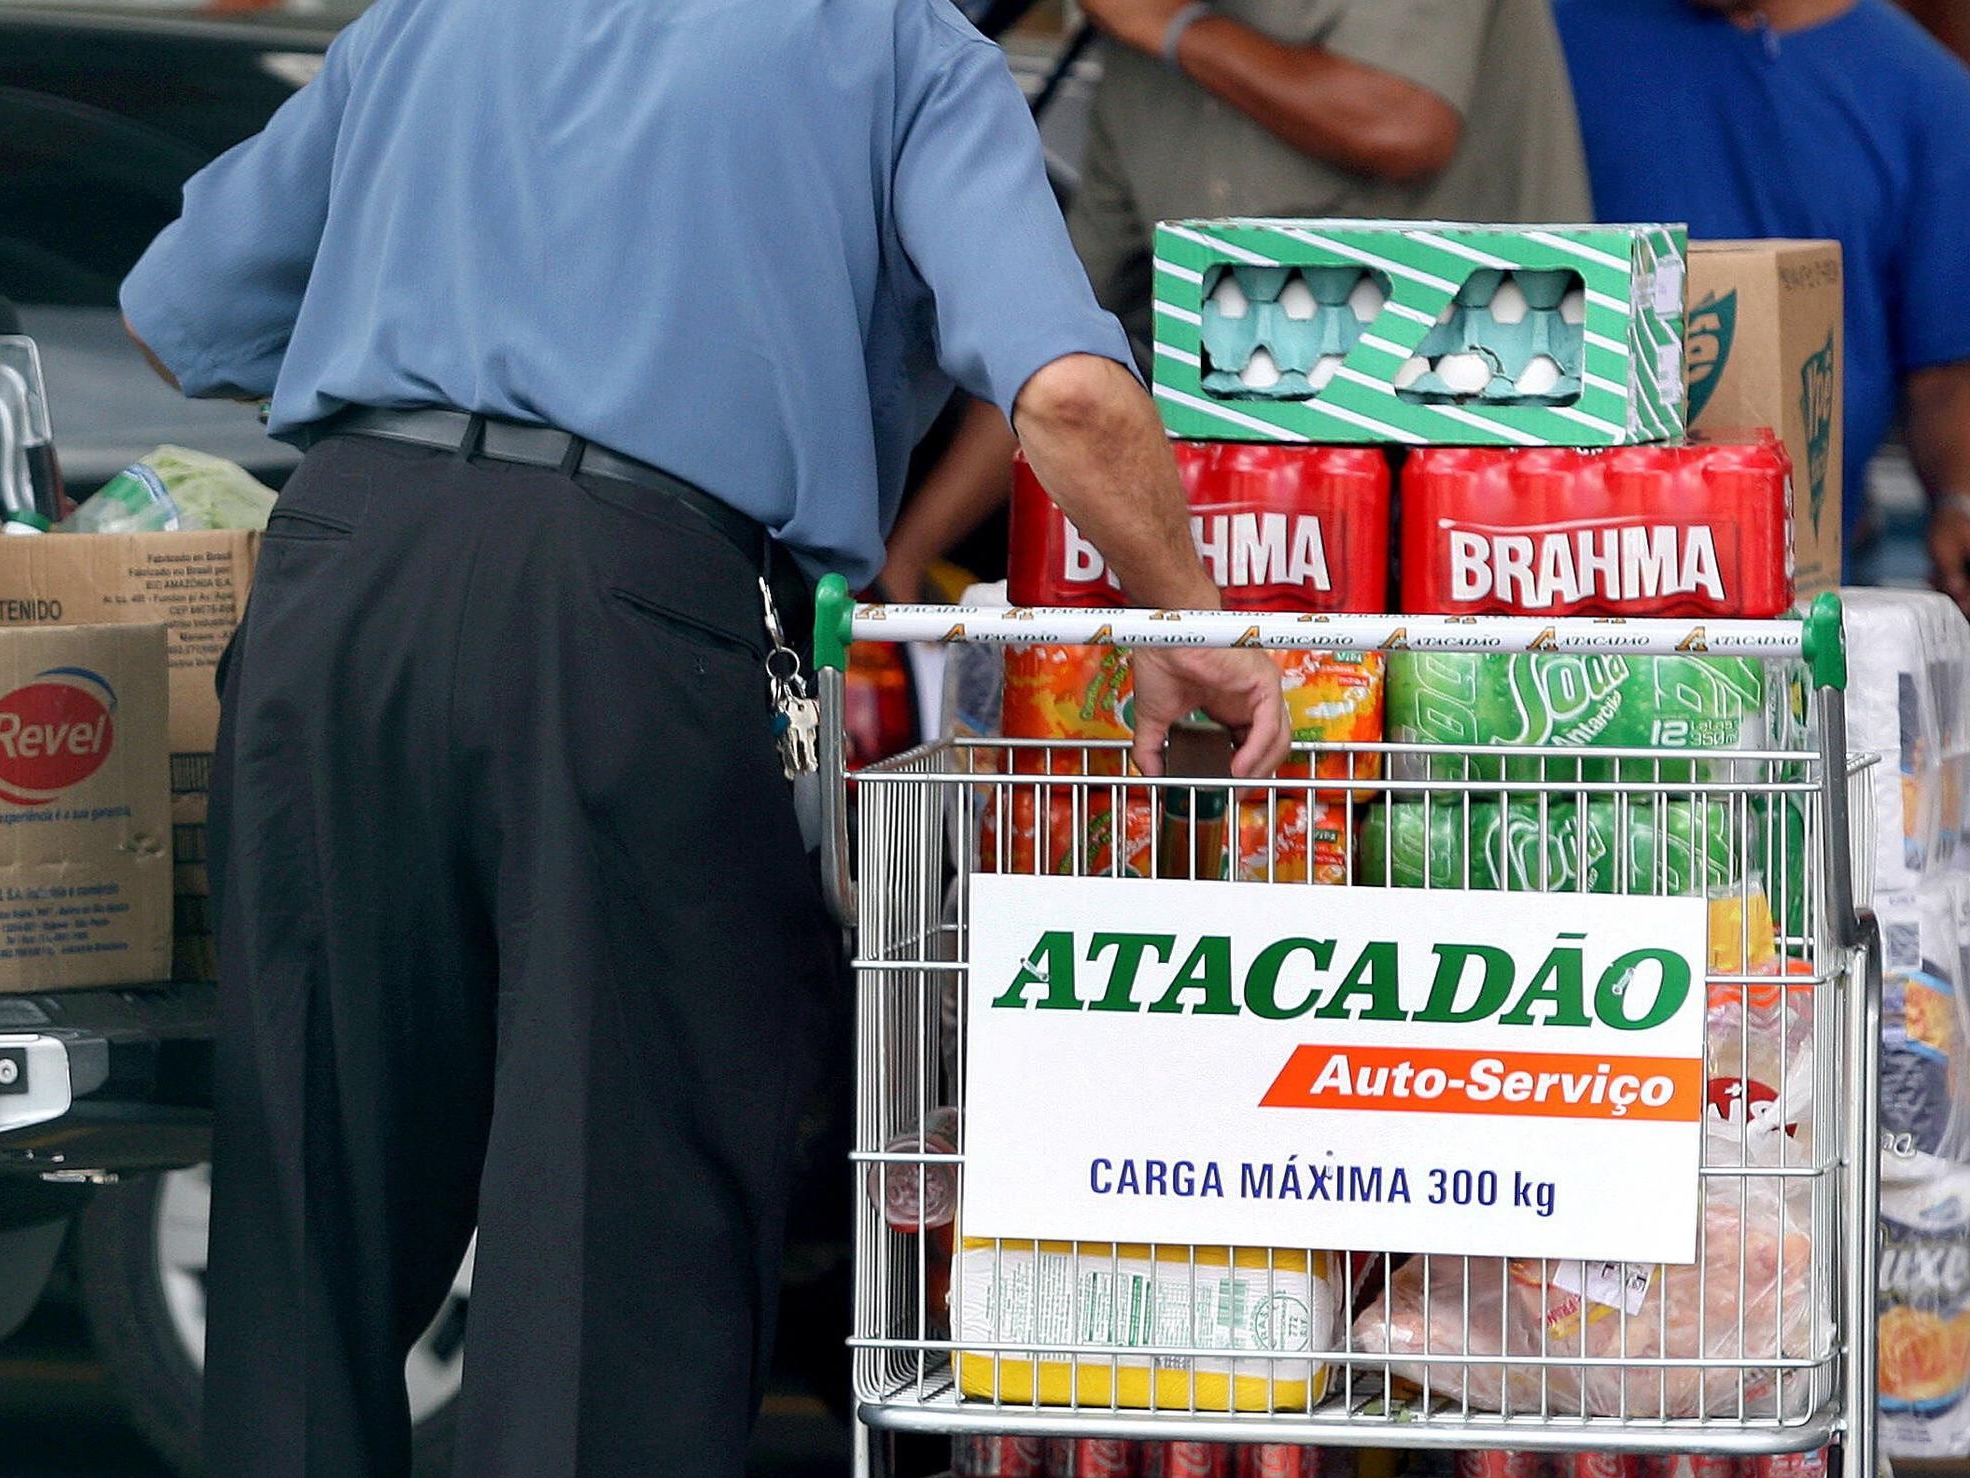 Le discounter Atacadão, venu du Brésil, est une filiale du groupe Carrefour. Le concept ? « Les prix les plus bas du marché, un assortiment très réduit et de très gros conditionnements », selon le PDG de Carrefour. EFE/MaxPPP/Sebastião Moreira